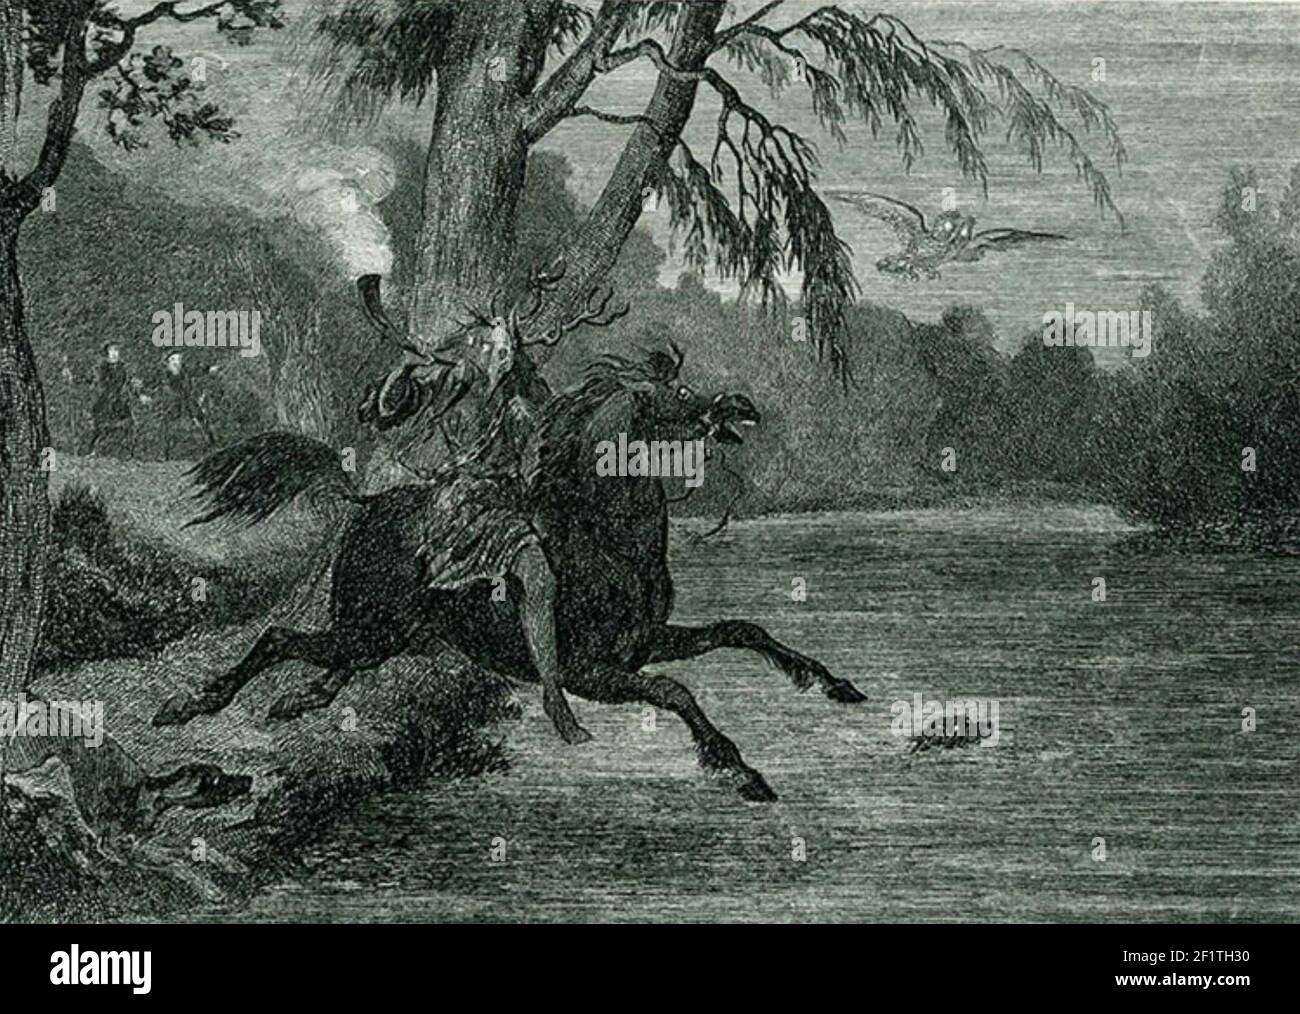 HERNE LE CHASSEUR de folklore anglais fantôme qui hante la forêt de Windsor avec ses huttes et un hibou. Gravure vers 1843 par George Cruikshank sho9ws Herne étant regardée par le duc de Richmond et le comte de Surrey. Banque D'Images